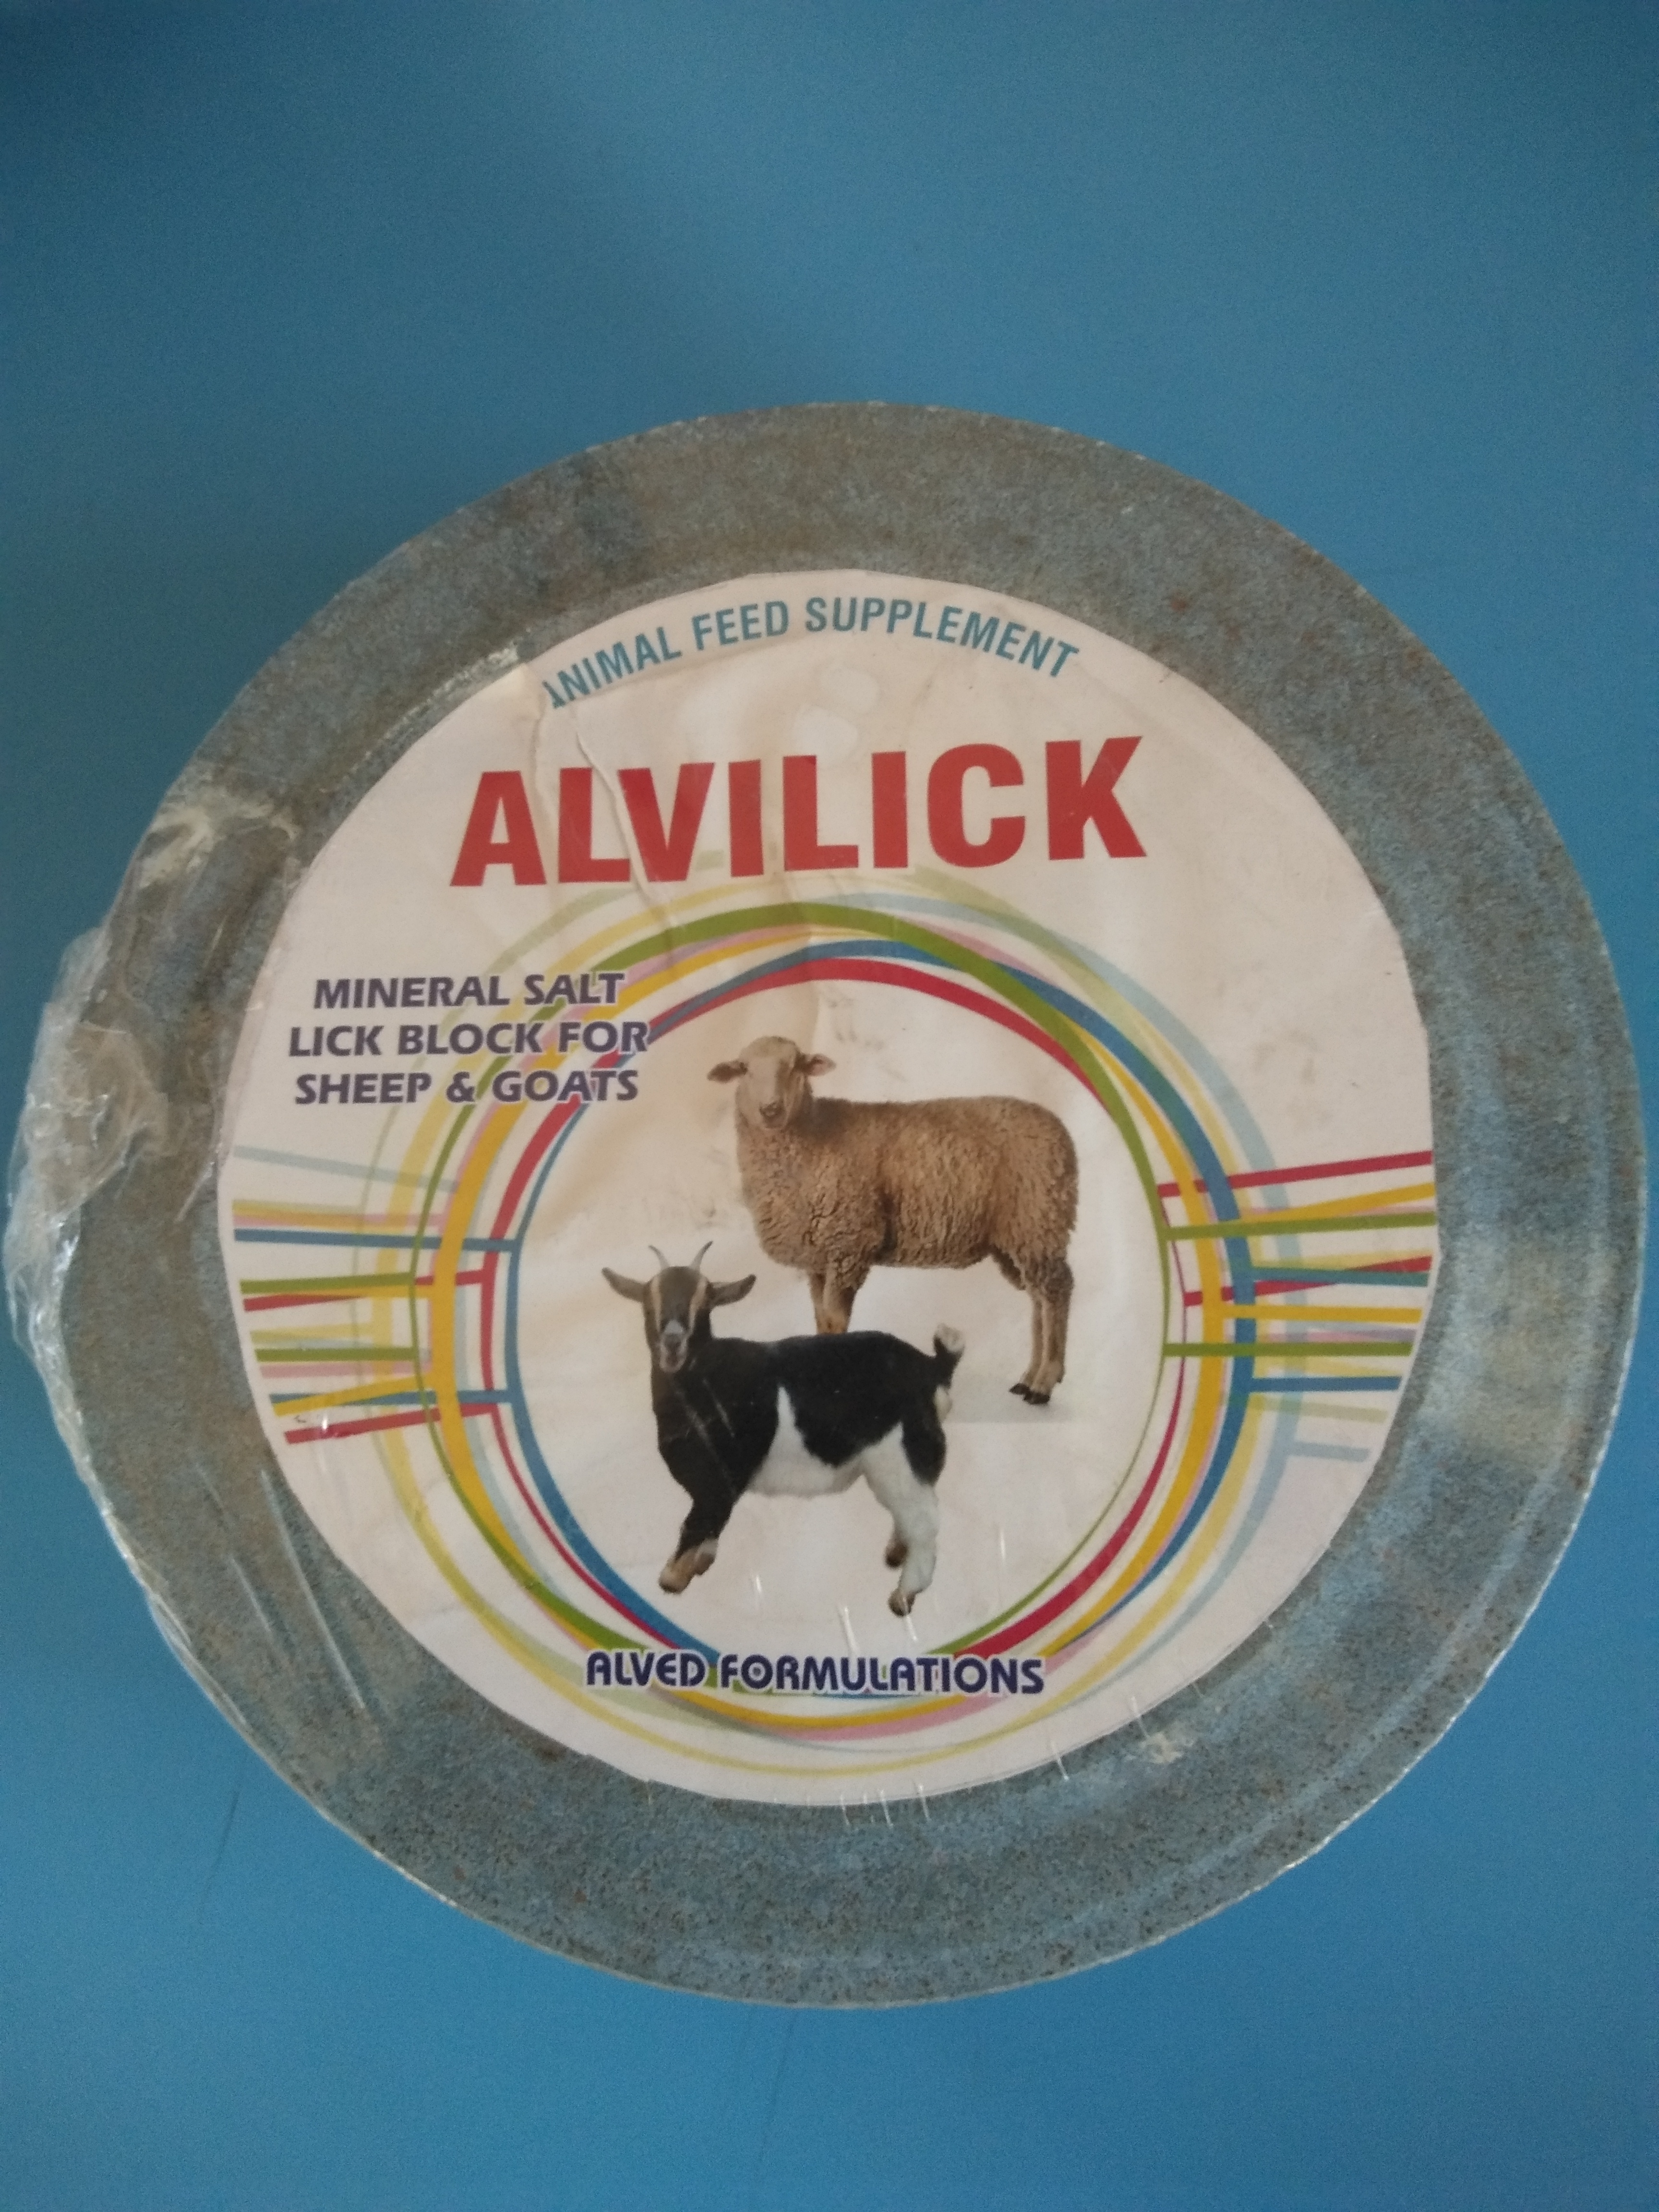 Salt Lick Alvilick